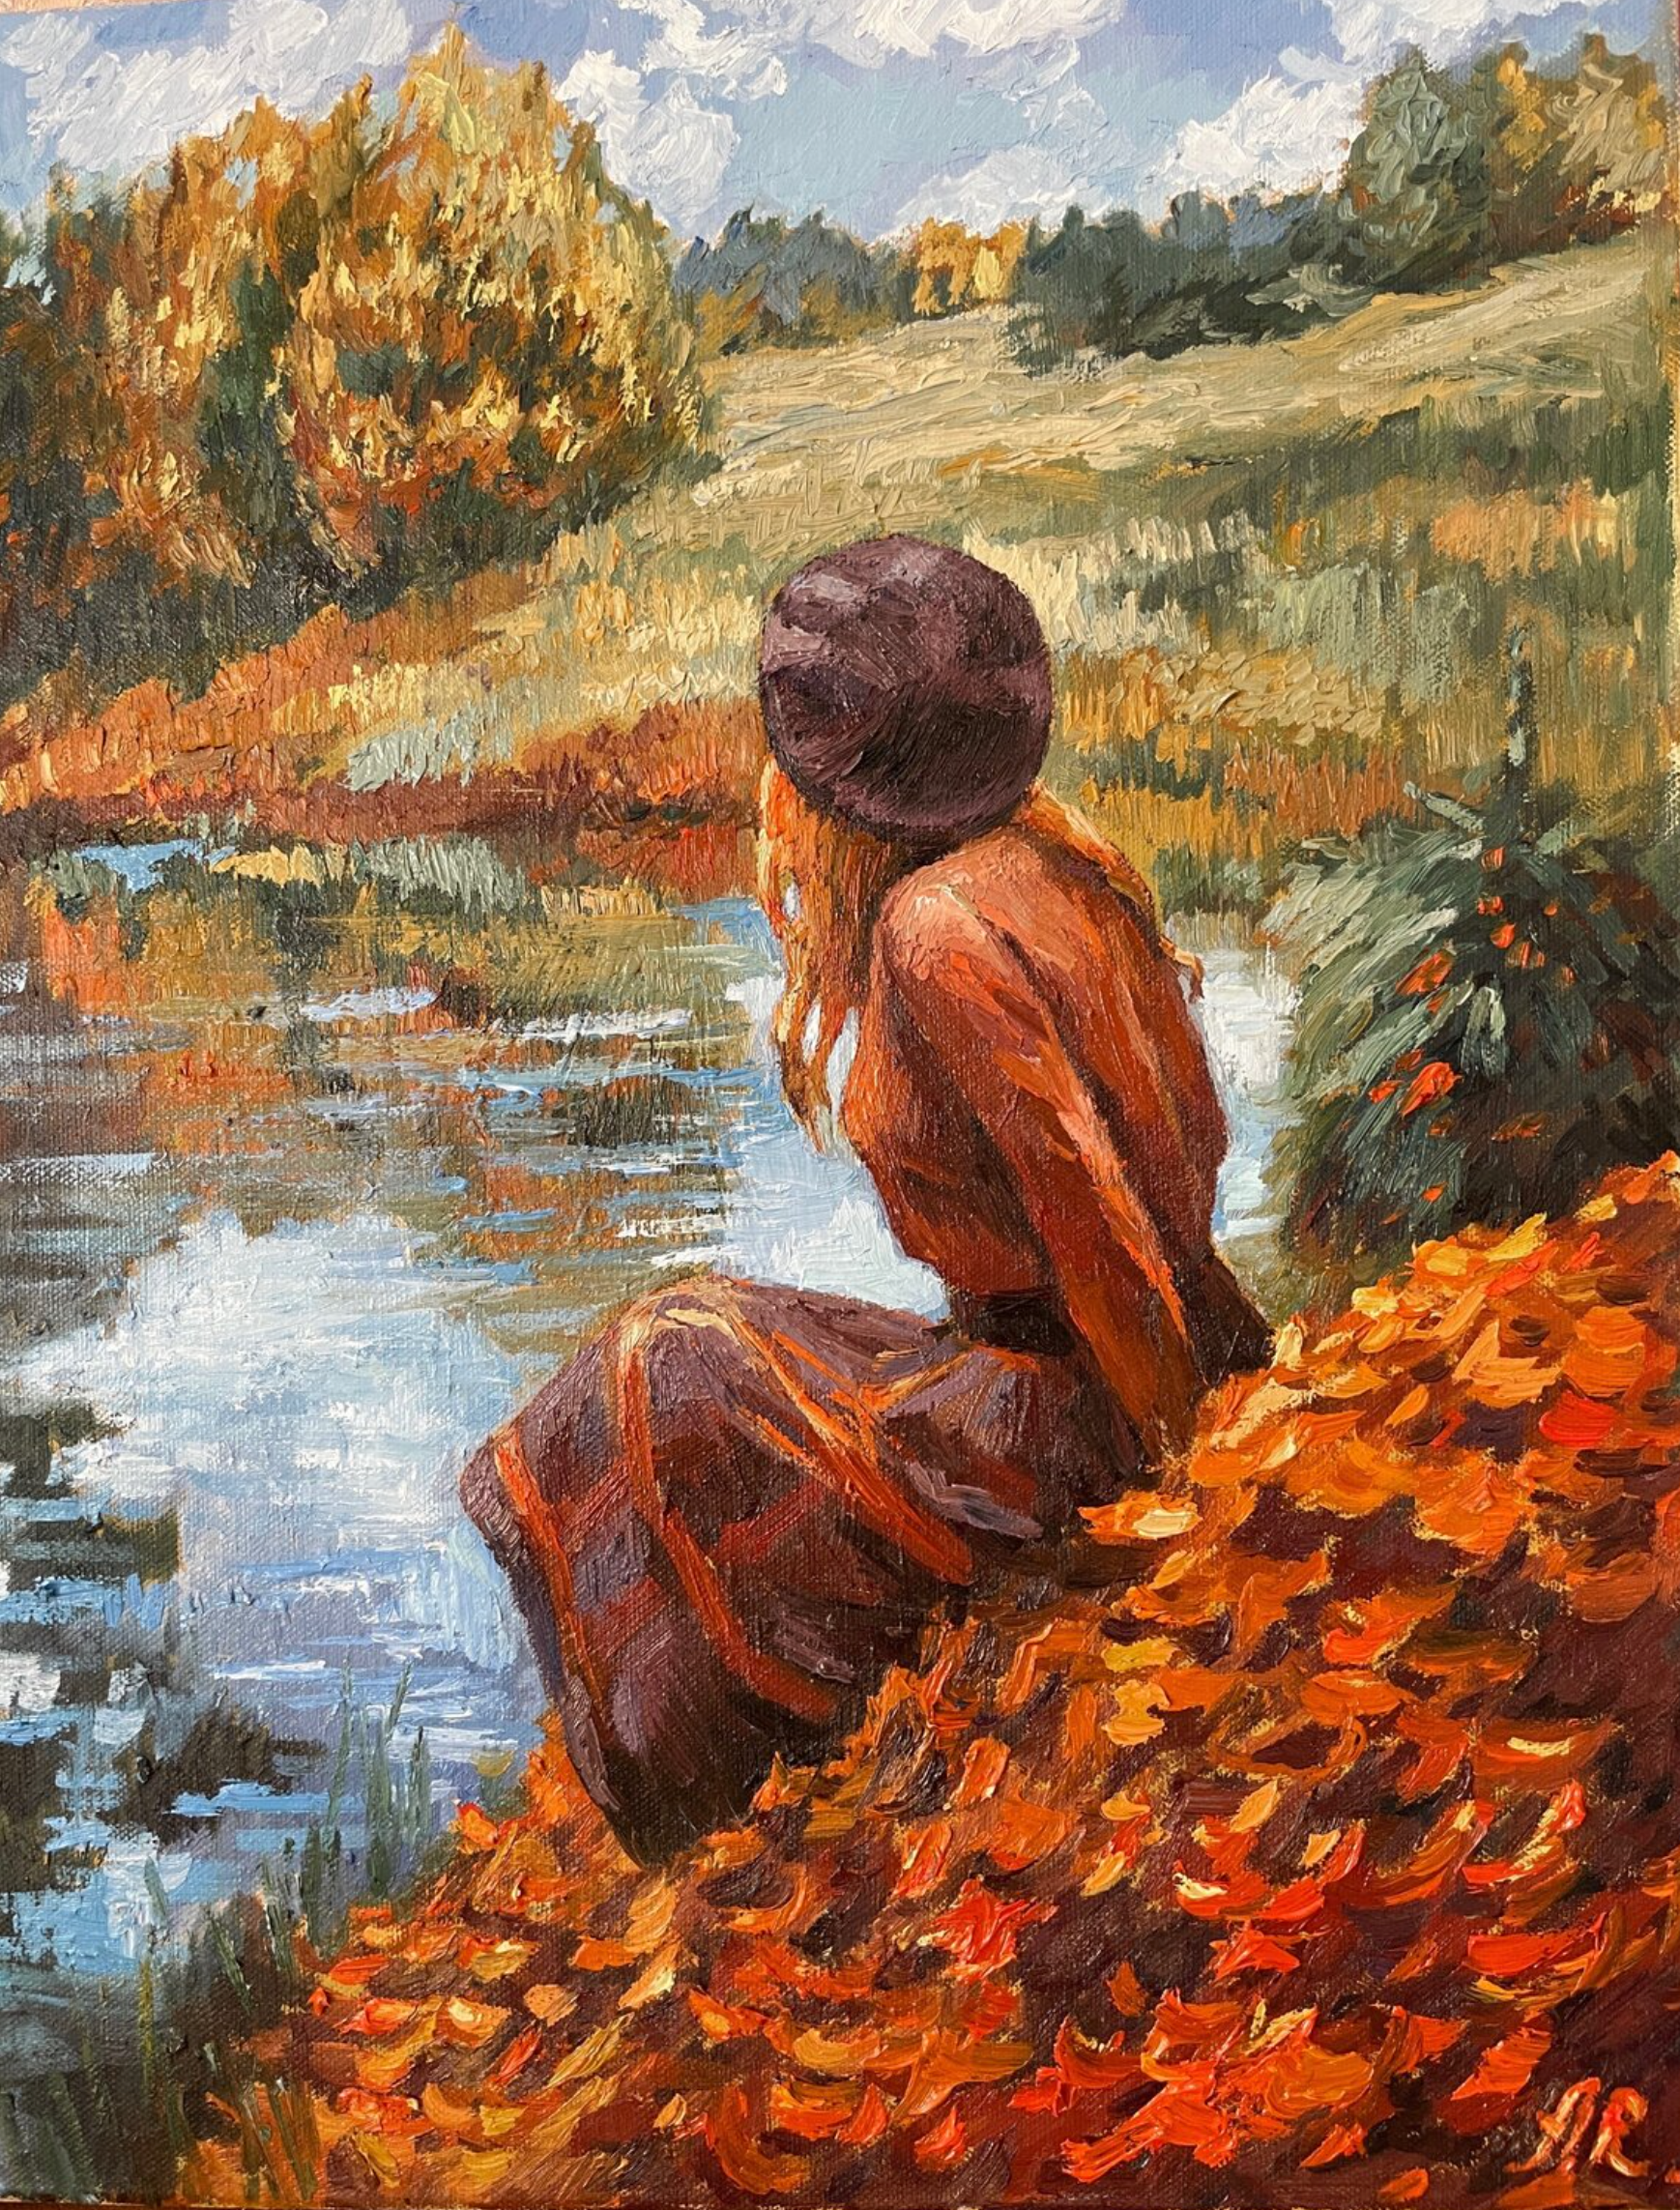 Il dipinto "Favola d'autunno" di Anna Reznikova mostra un meraviglioso paesaggio autunnale. Una giovane donna siede su un prato in riva a un lago, nei meravigliosi colori autunnali, marrone, giallo, rosso. Dipinto con pennelli su tela di cotone.